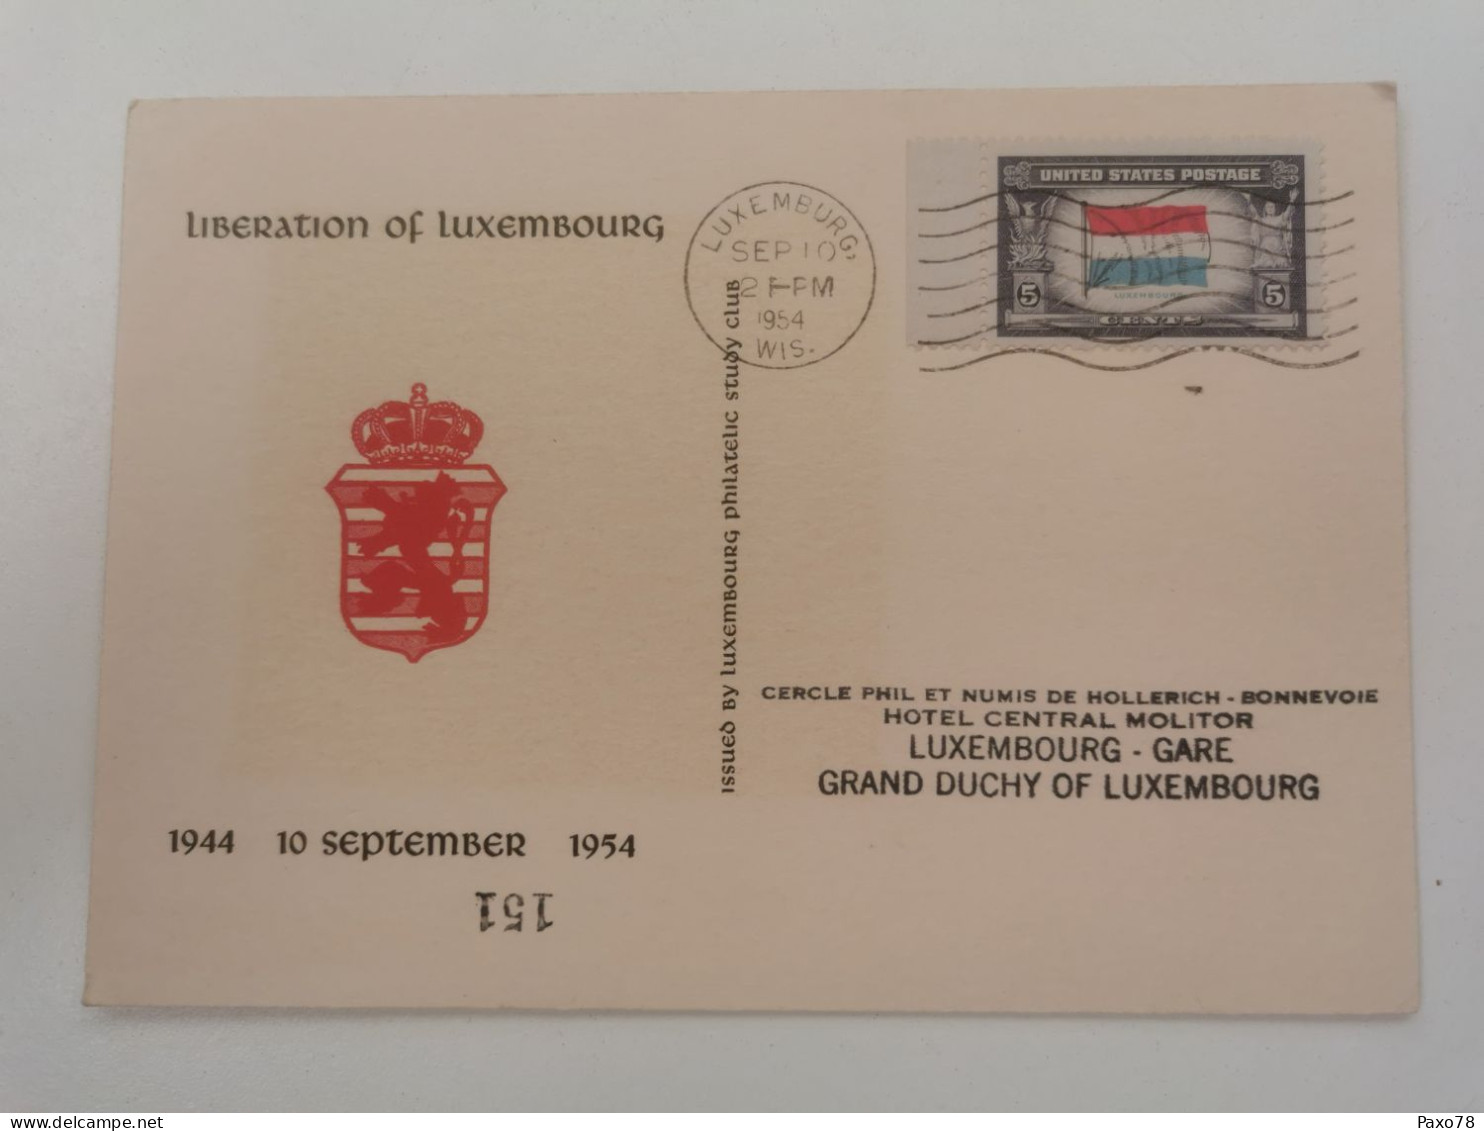 Luxembourg, Libération Du Luxembourg WW2 - Cartes Commémoratives